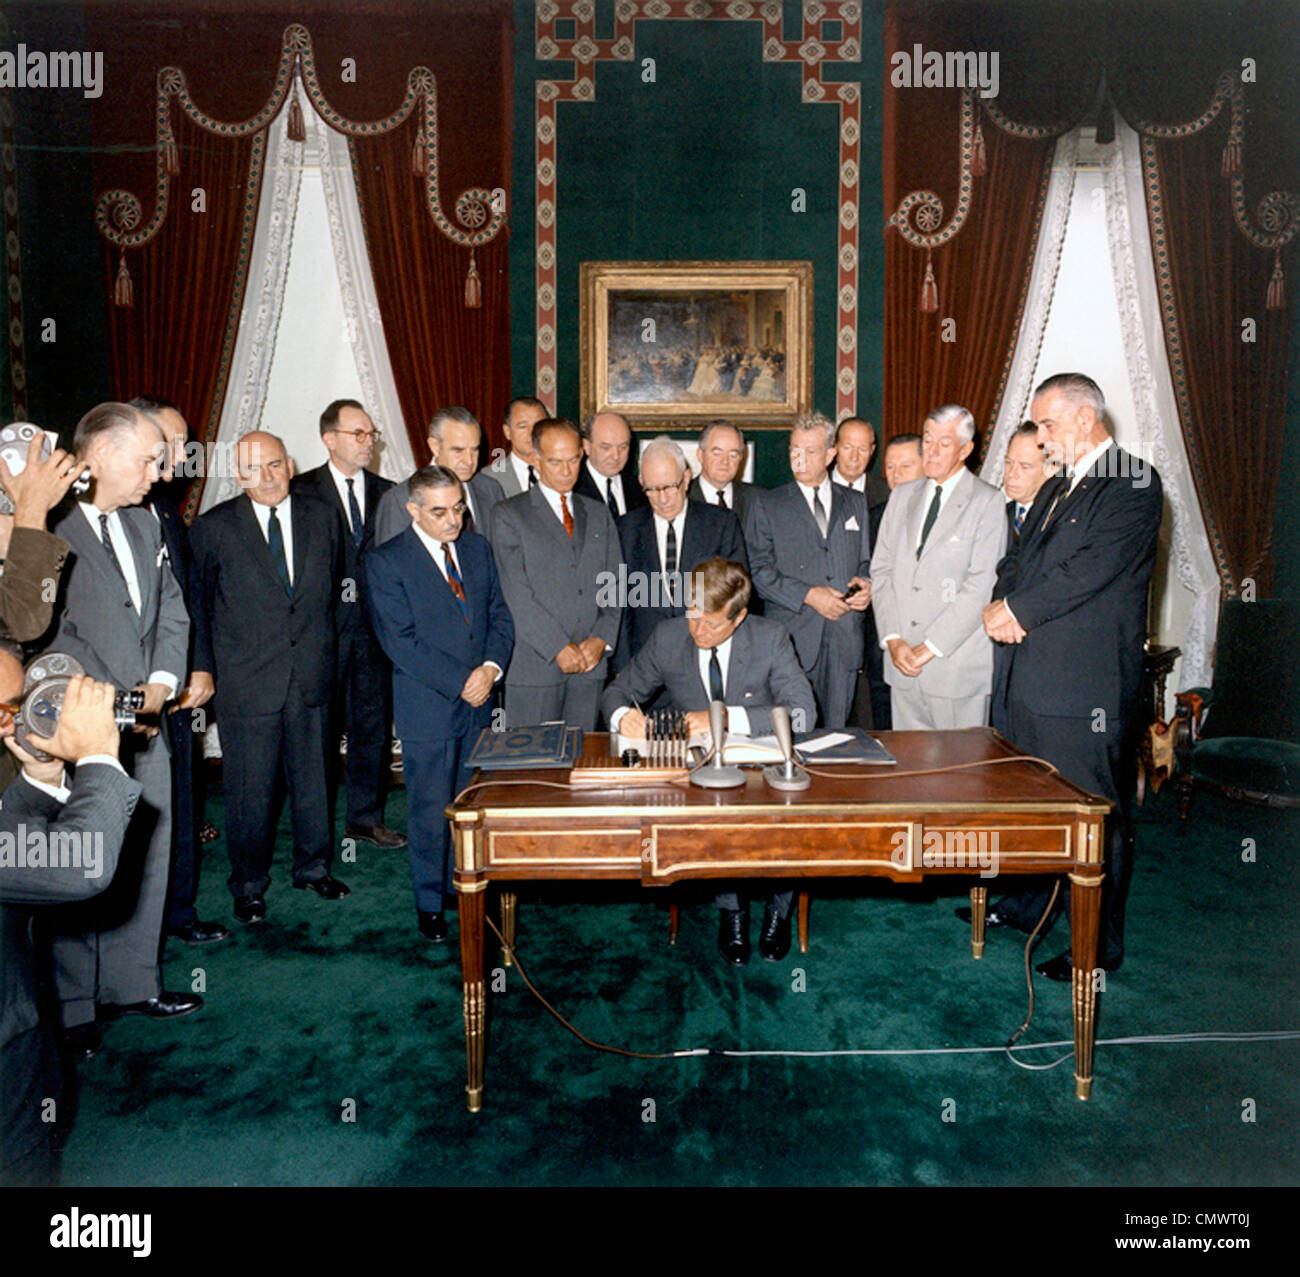 Präsident JOHN f. KENNEDY unterzeichnet die nuklearen Teststopp-Vertrag 7. Oktober 1963. Siehe Beschreibung unten für Namen Stockfoto